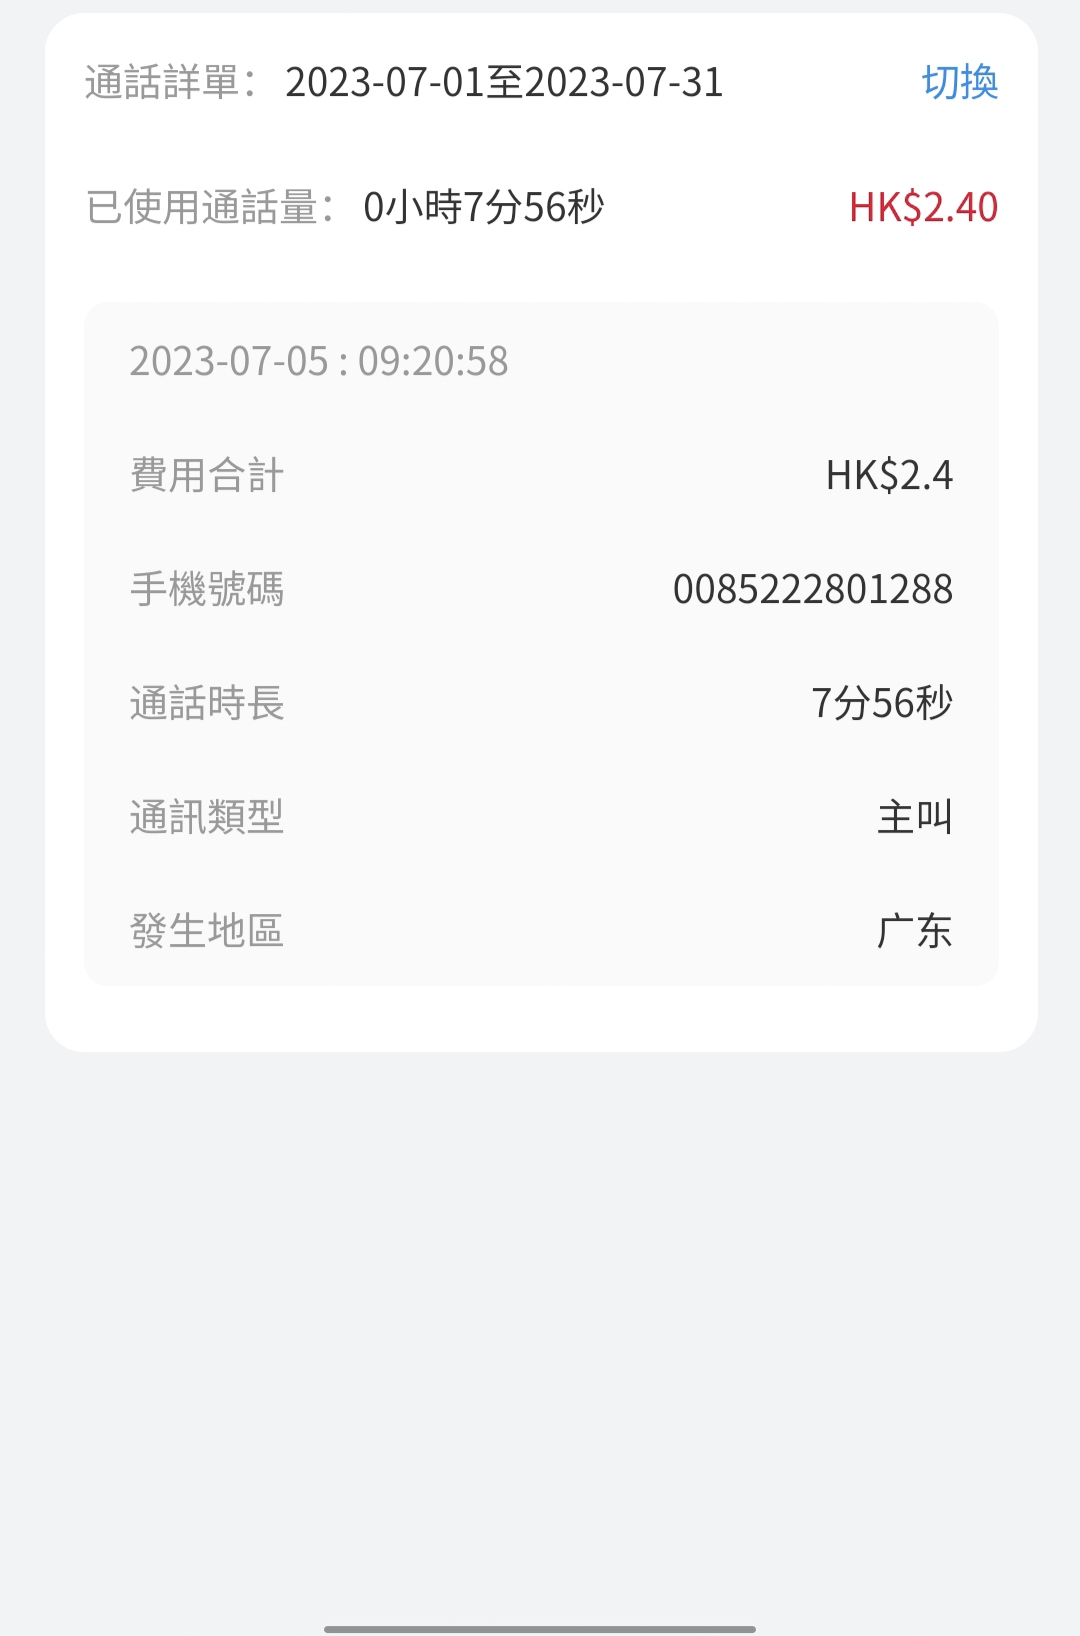 香港hahasim简直是话费杀手,在深圳拨打了香港花旗热线，5分钟扣了40HKD,还是慎用吧。